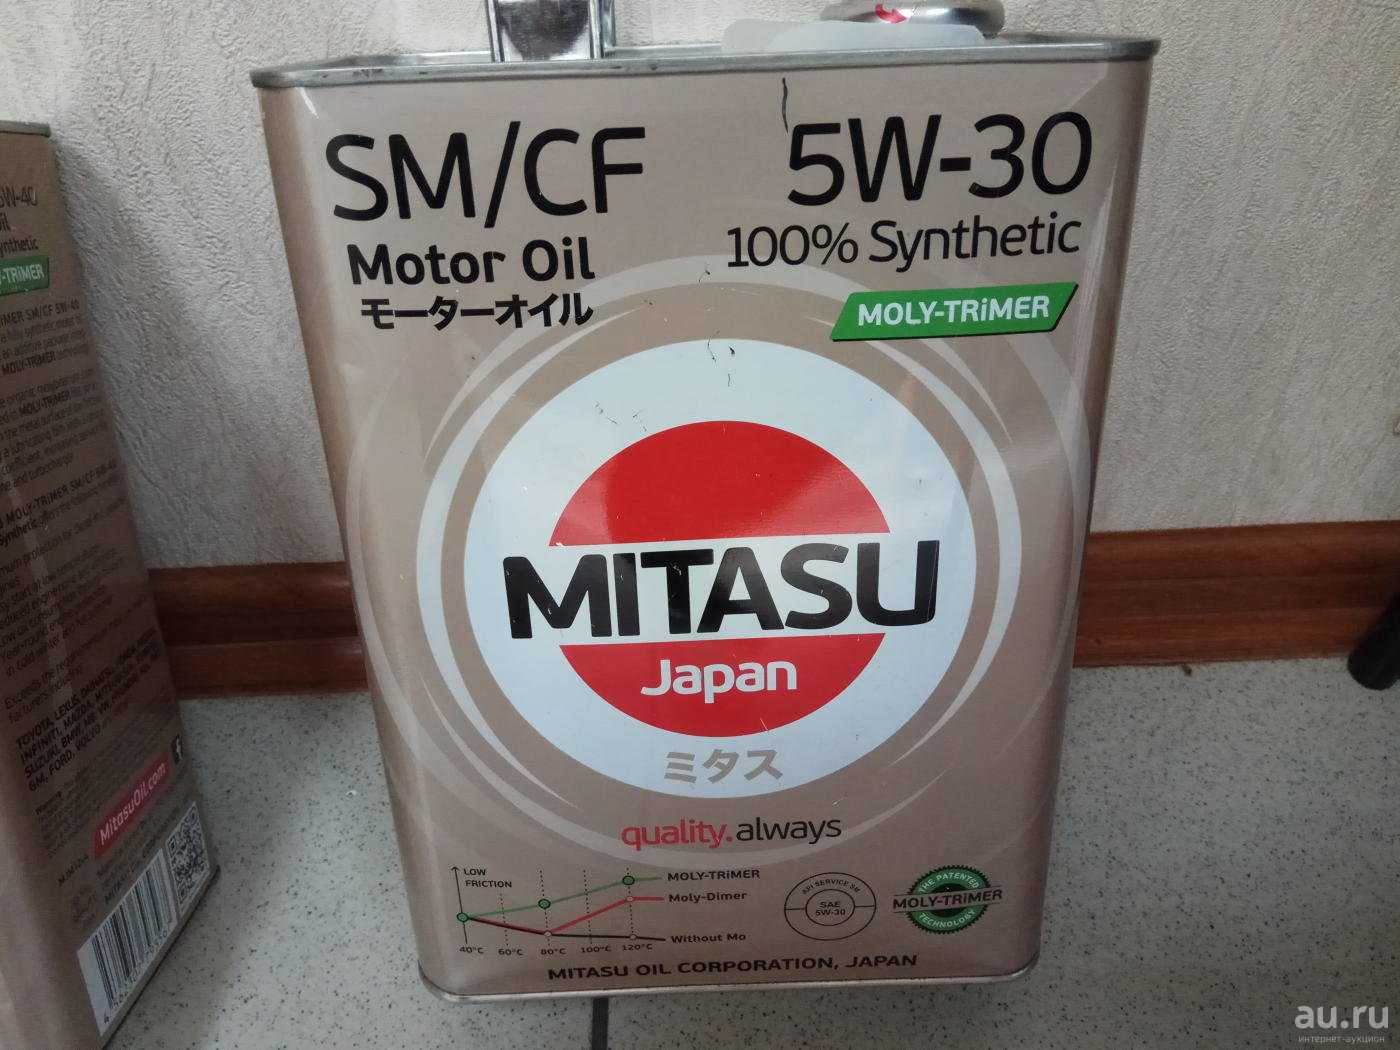 Mj101 Mitasu. Митасу 5w30. Mitasu Platinum 5w30 с3. Mitasu MJ-103/1.